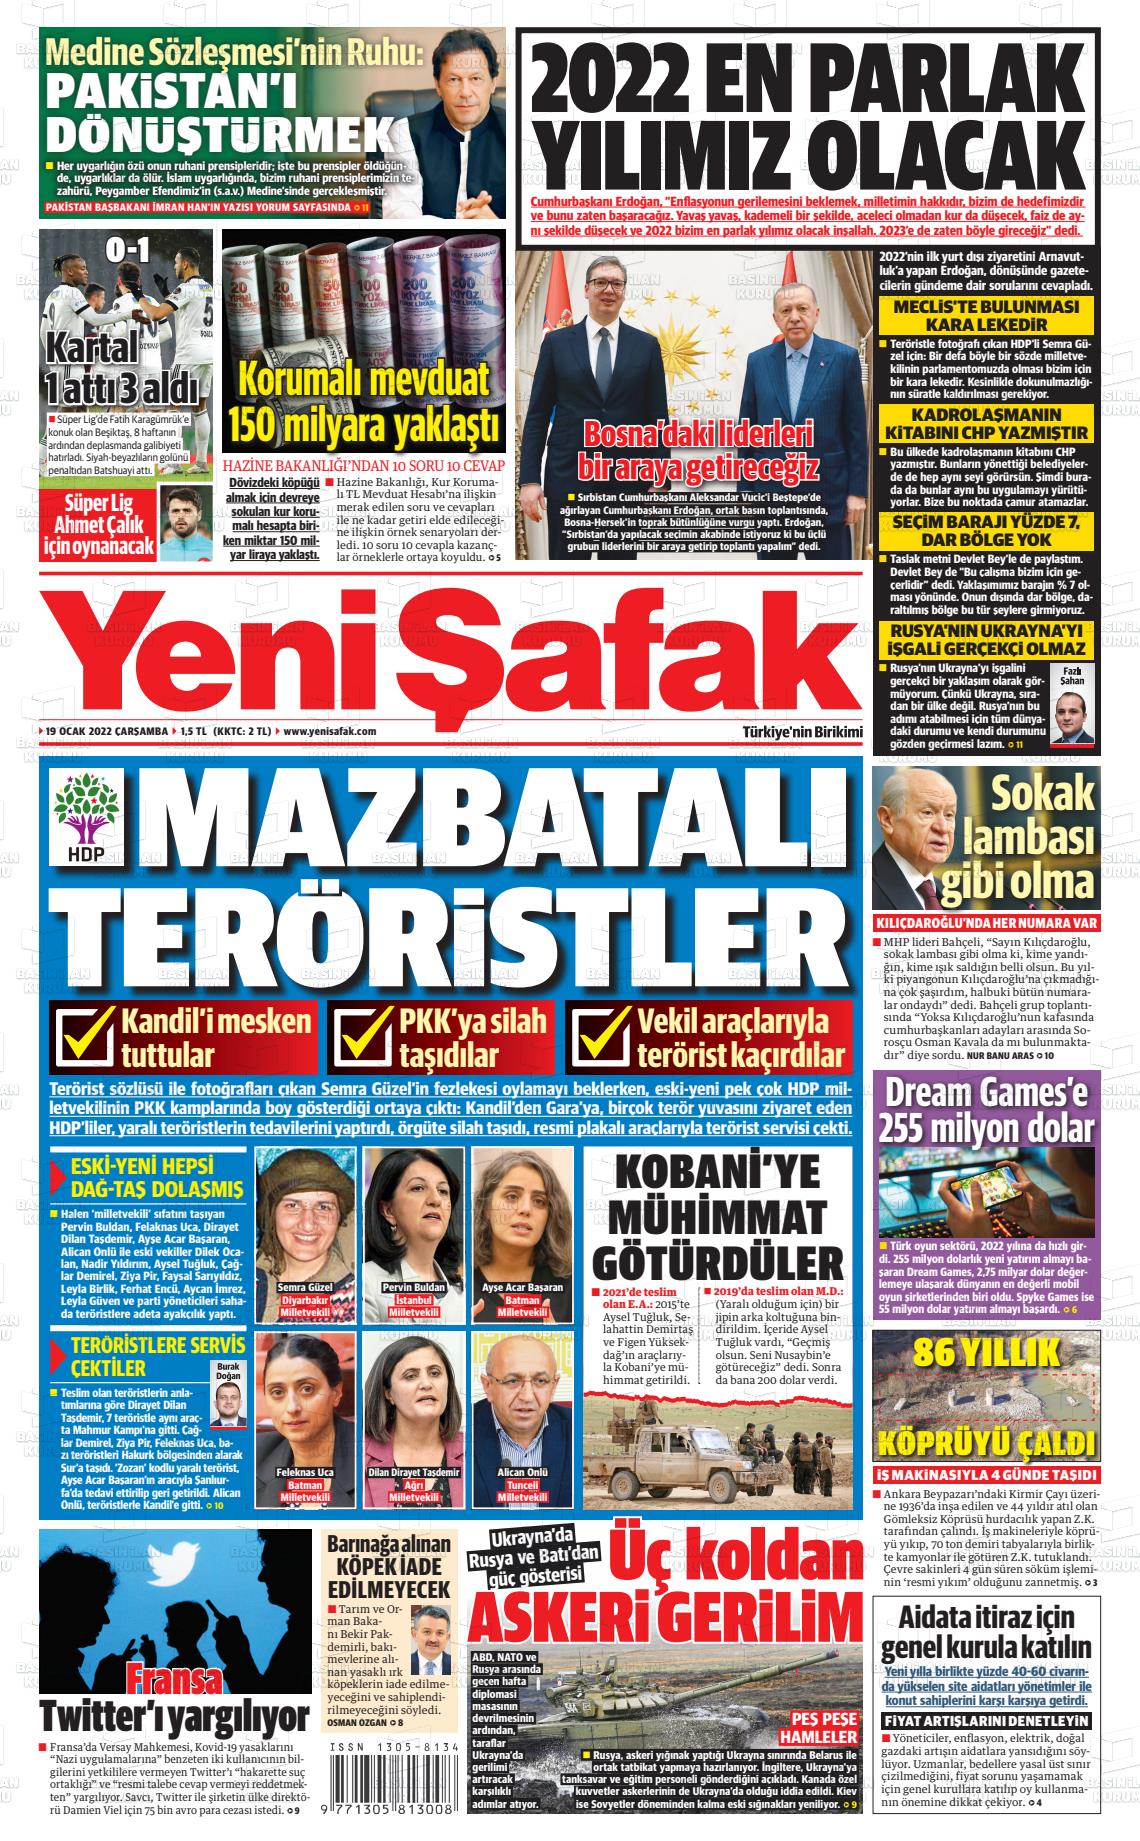 19 Ocak 2022 Yeni Şafak Gazete Manşeti